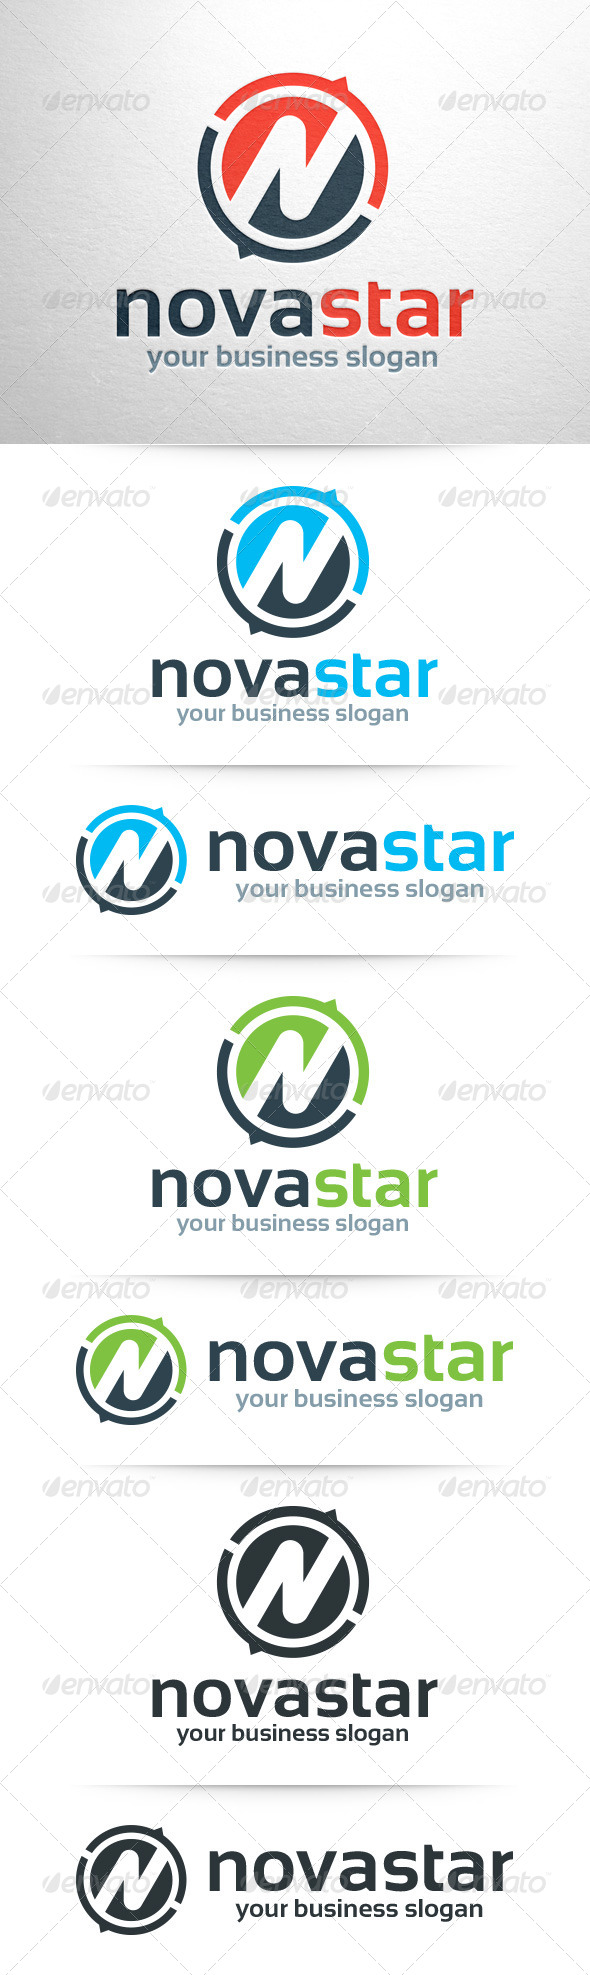 Novastar - Letter N Logo